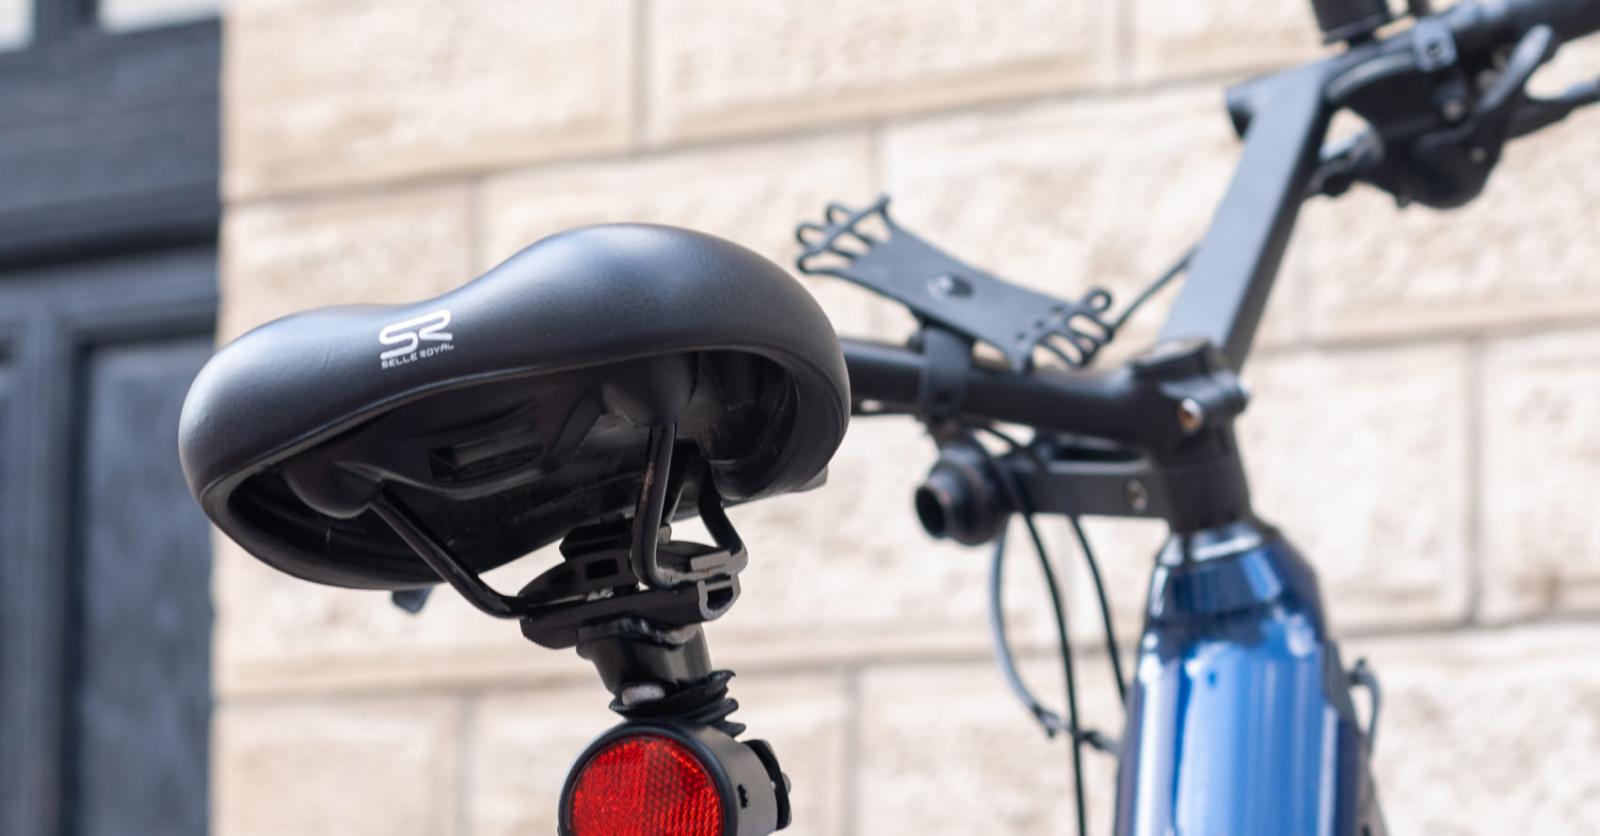 BIKE TRACKER Traceur GPS antivol de géolocalisation dédié vélo